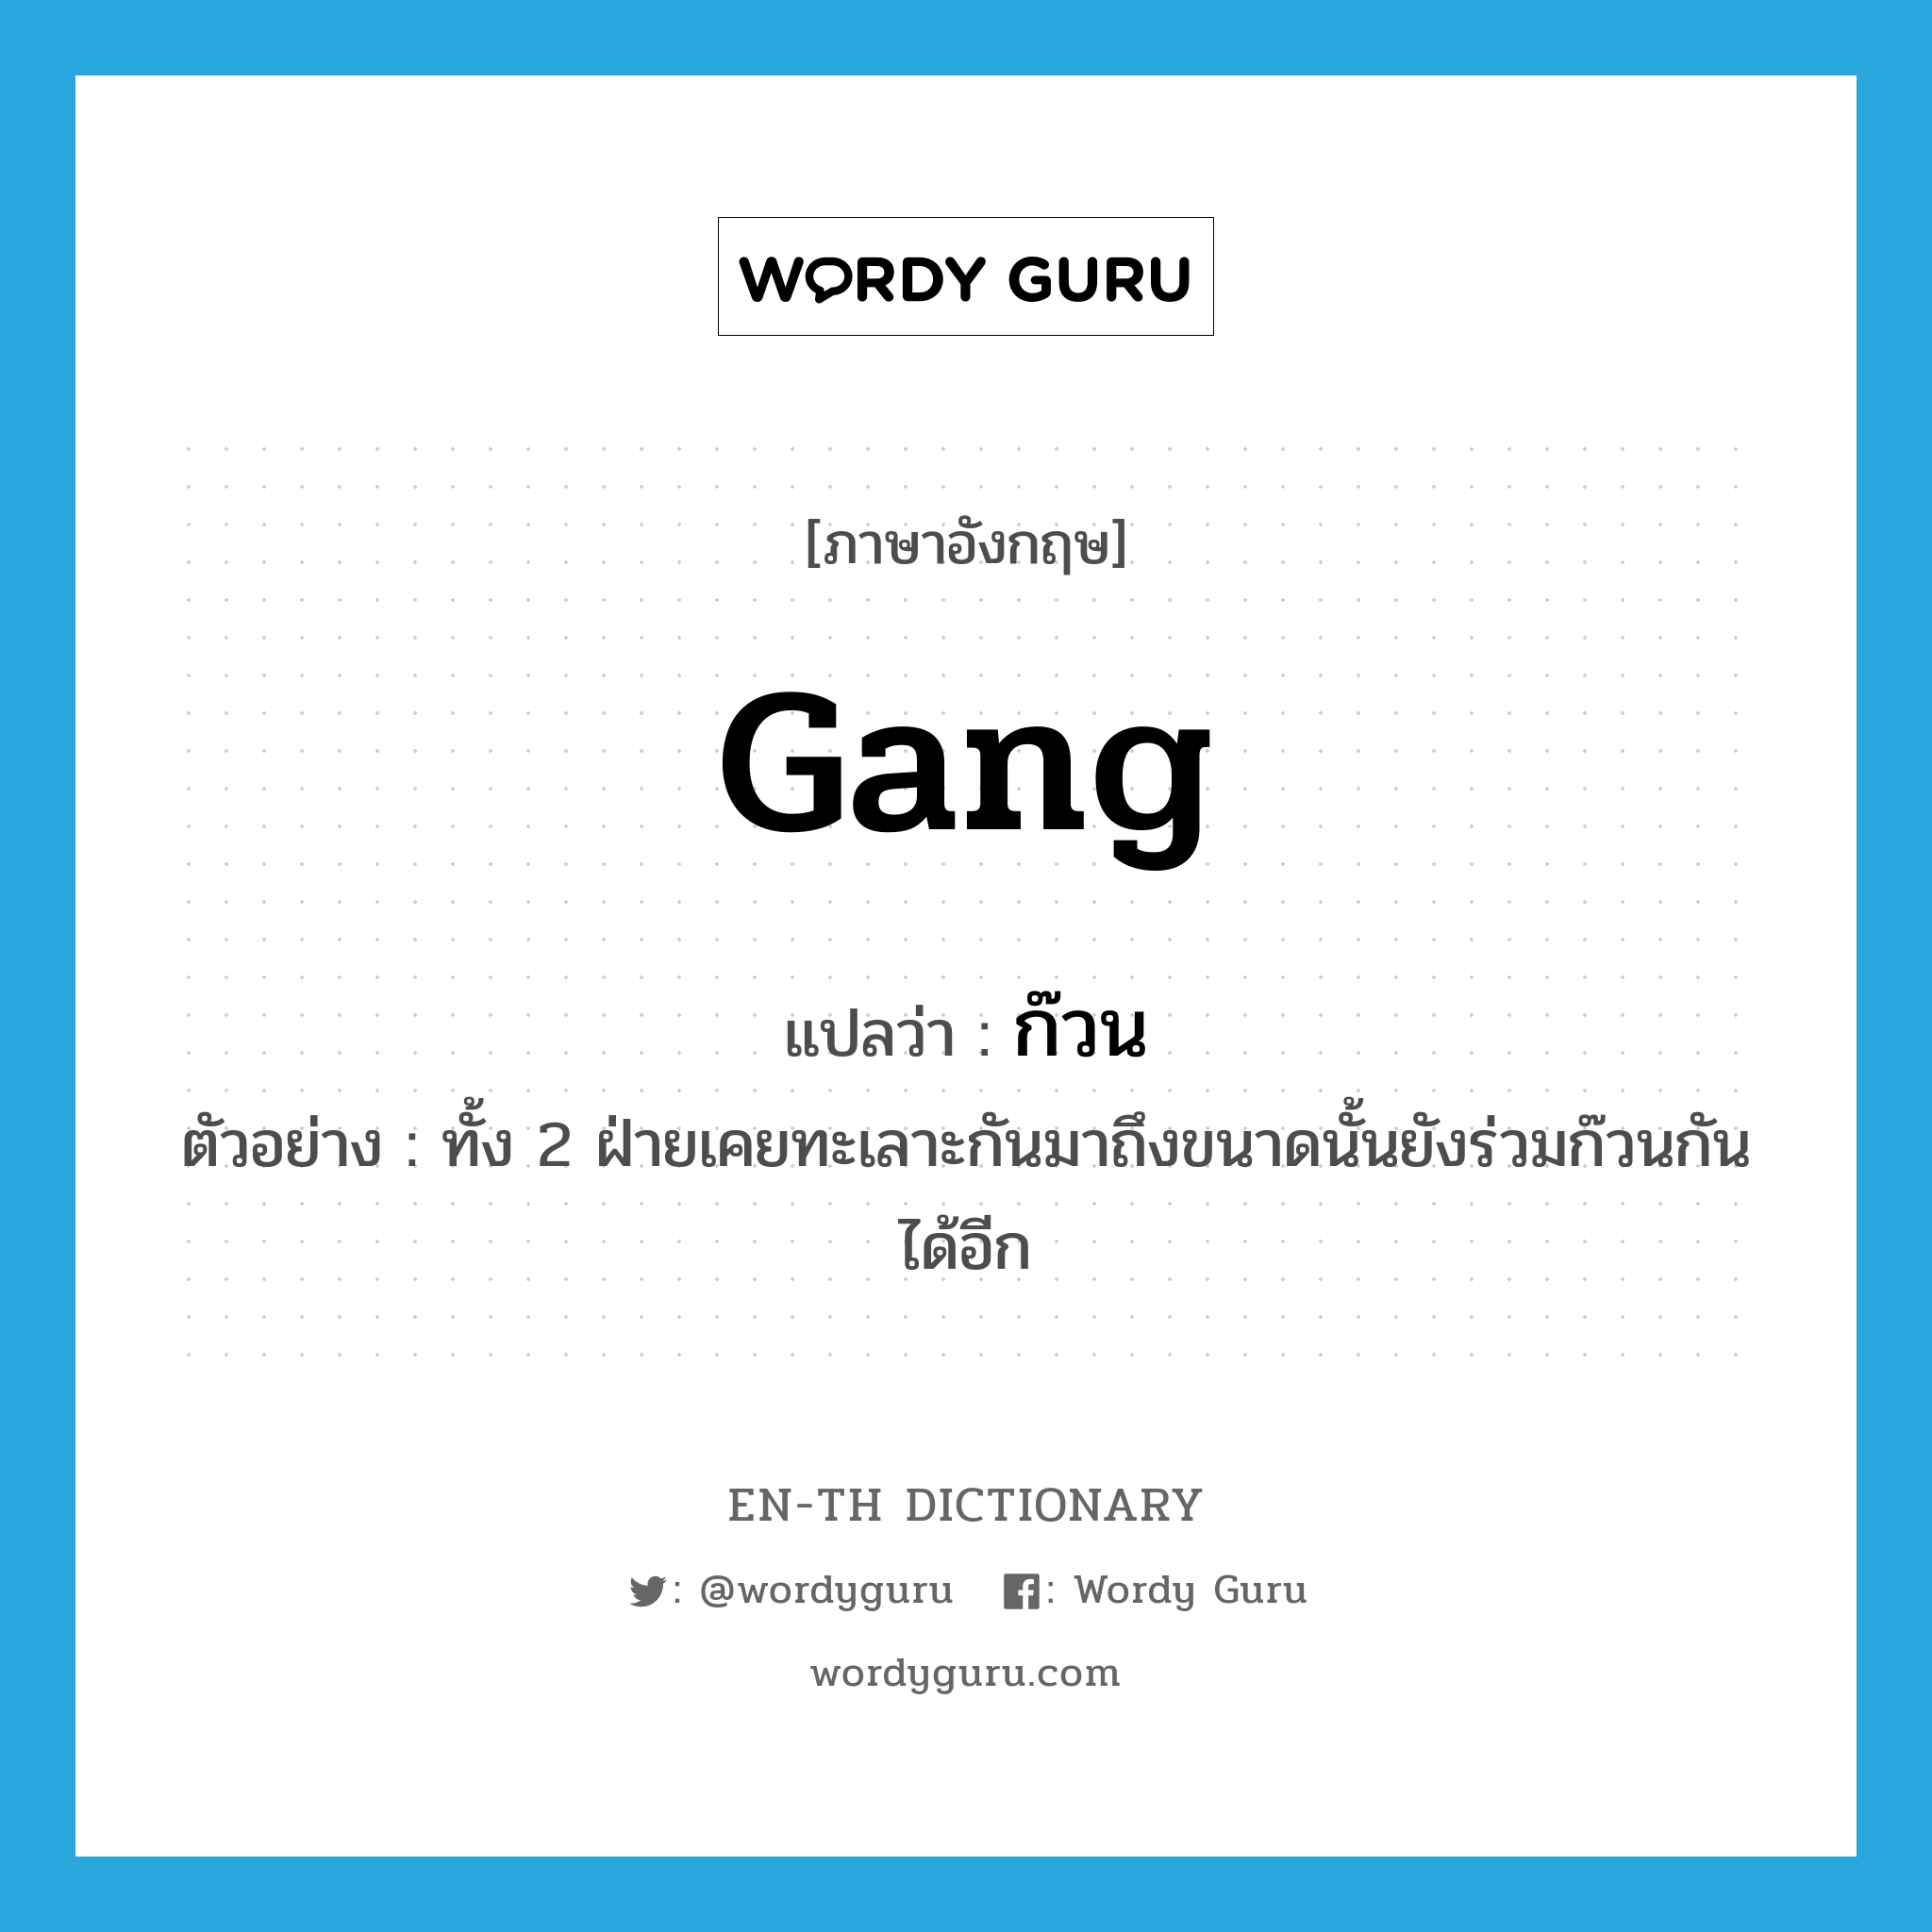 gang แปลว่า?, คำศัพท์ภาษาอังกฤษ gang แปลว่า ก๊วน ประเภท N ตัวอย่าง ทั้ง 2 ฝ่ายเคยทะเลาะกันมาถึงขนาดนั้นยังร่วมก๊วนกันได้อีก หมวด N